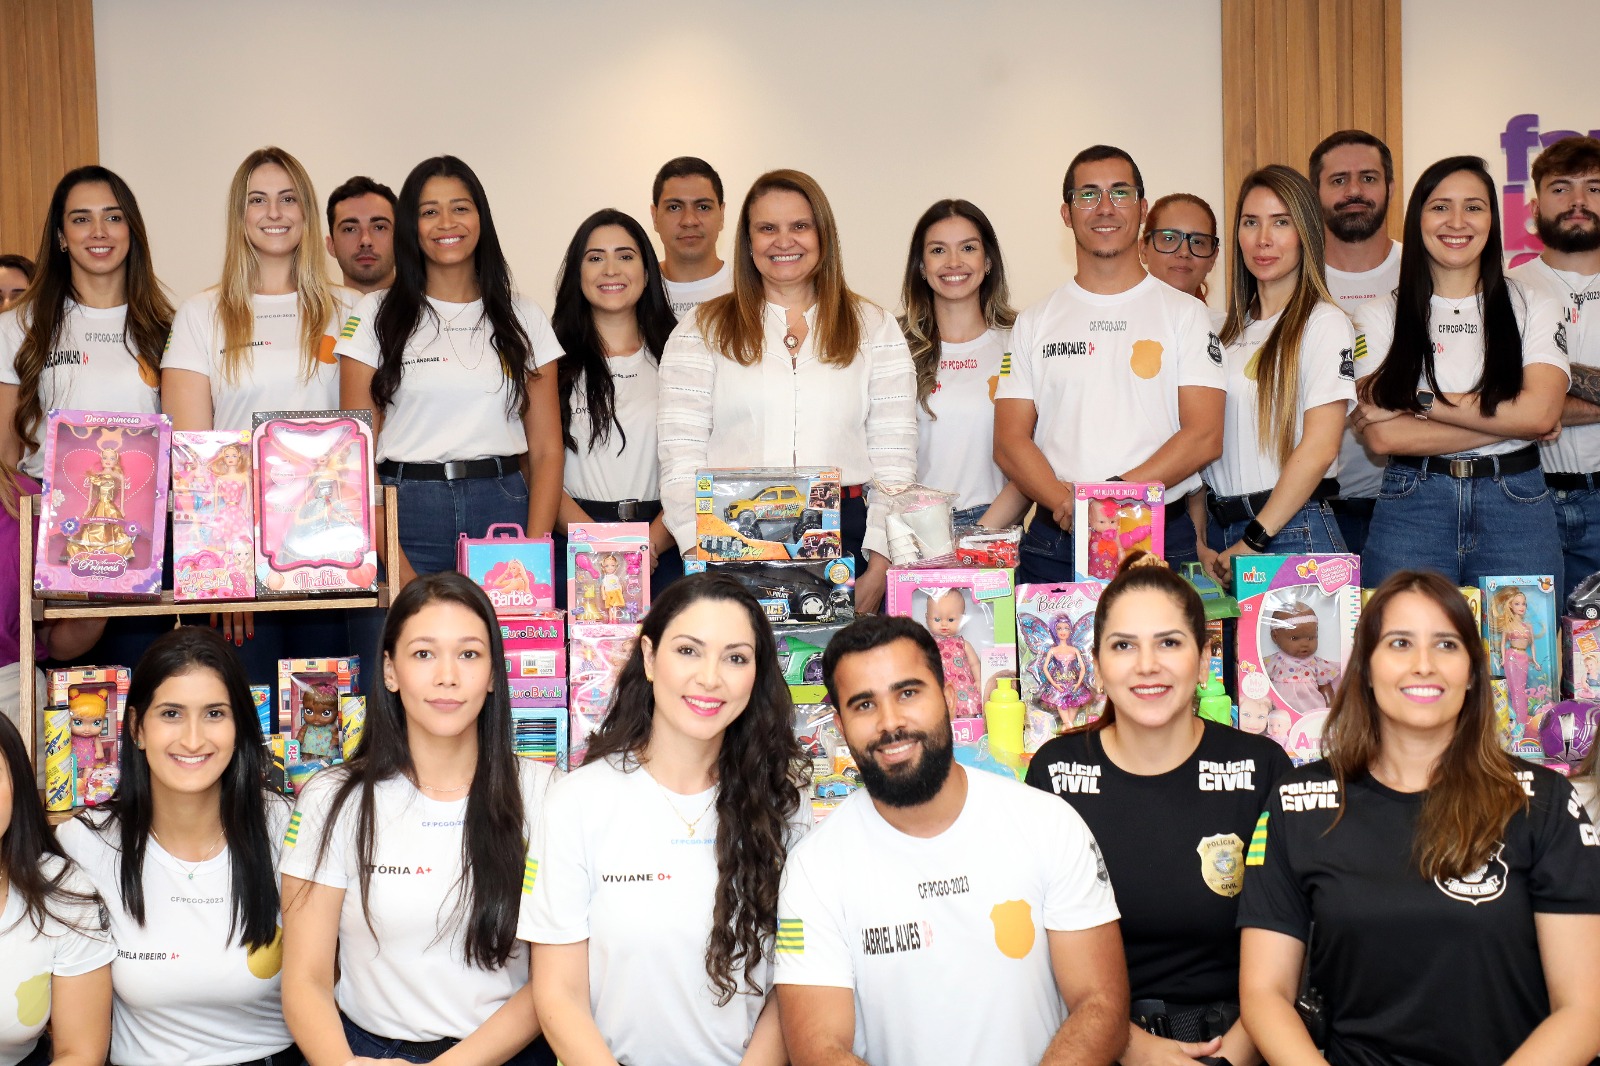 Polícia Civil repassa doação de 1,4 mil brinquedos à OVG; presentes serão destinados pelo Goiás Social a entidades que atendem crianças na grande Goiânia 